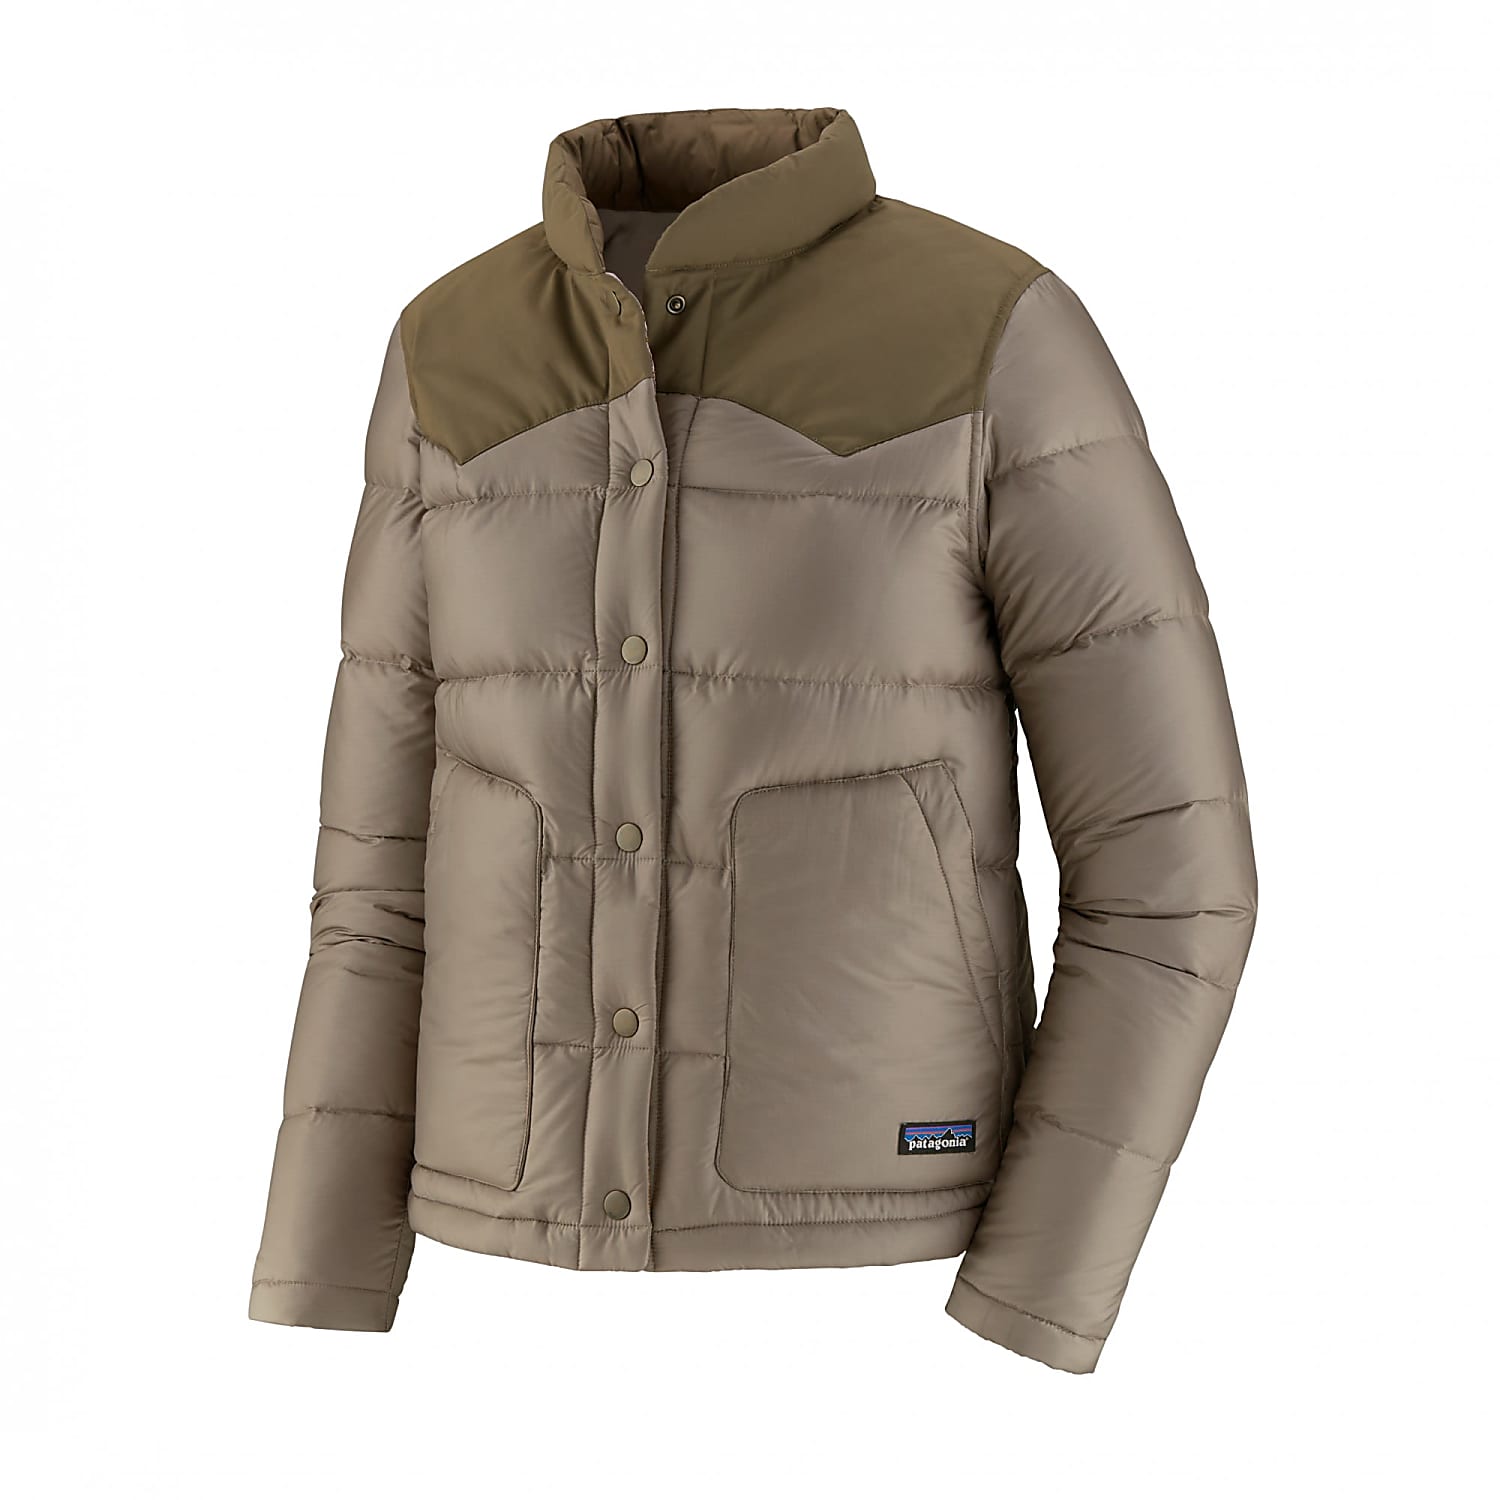 patagonia furry jacket